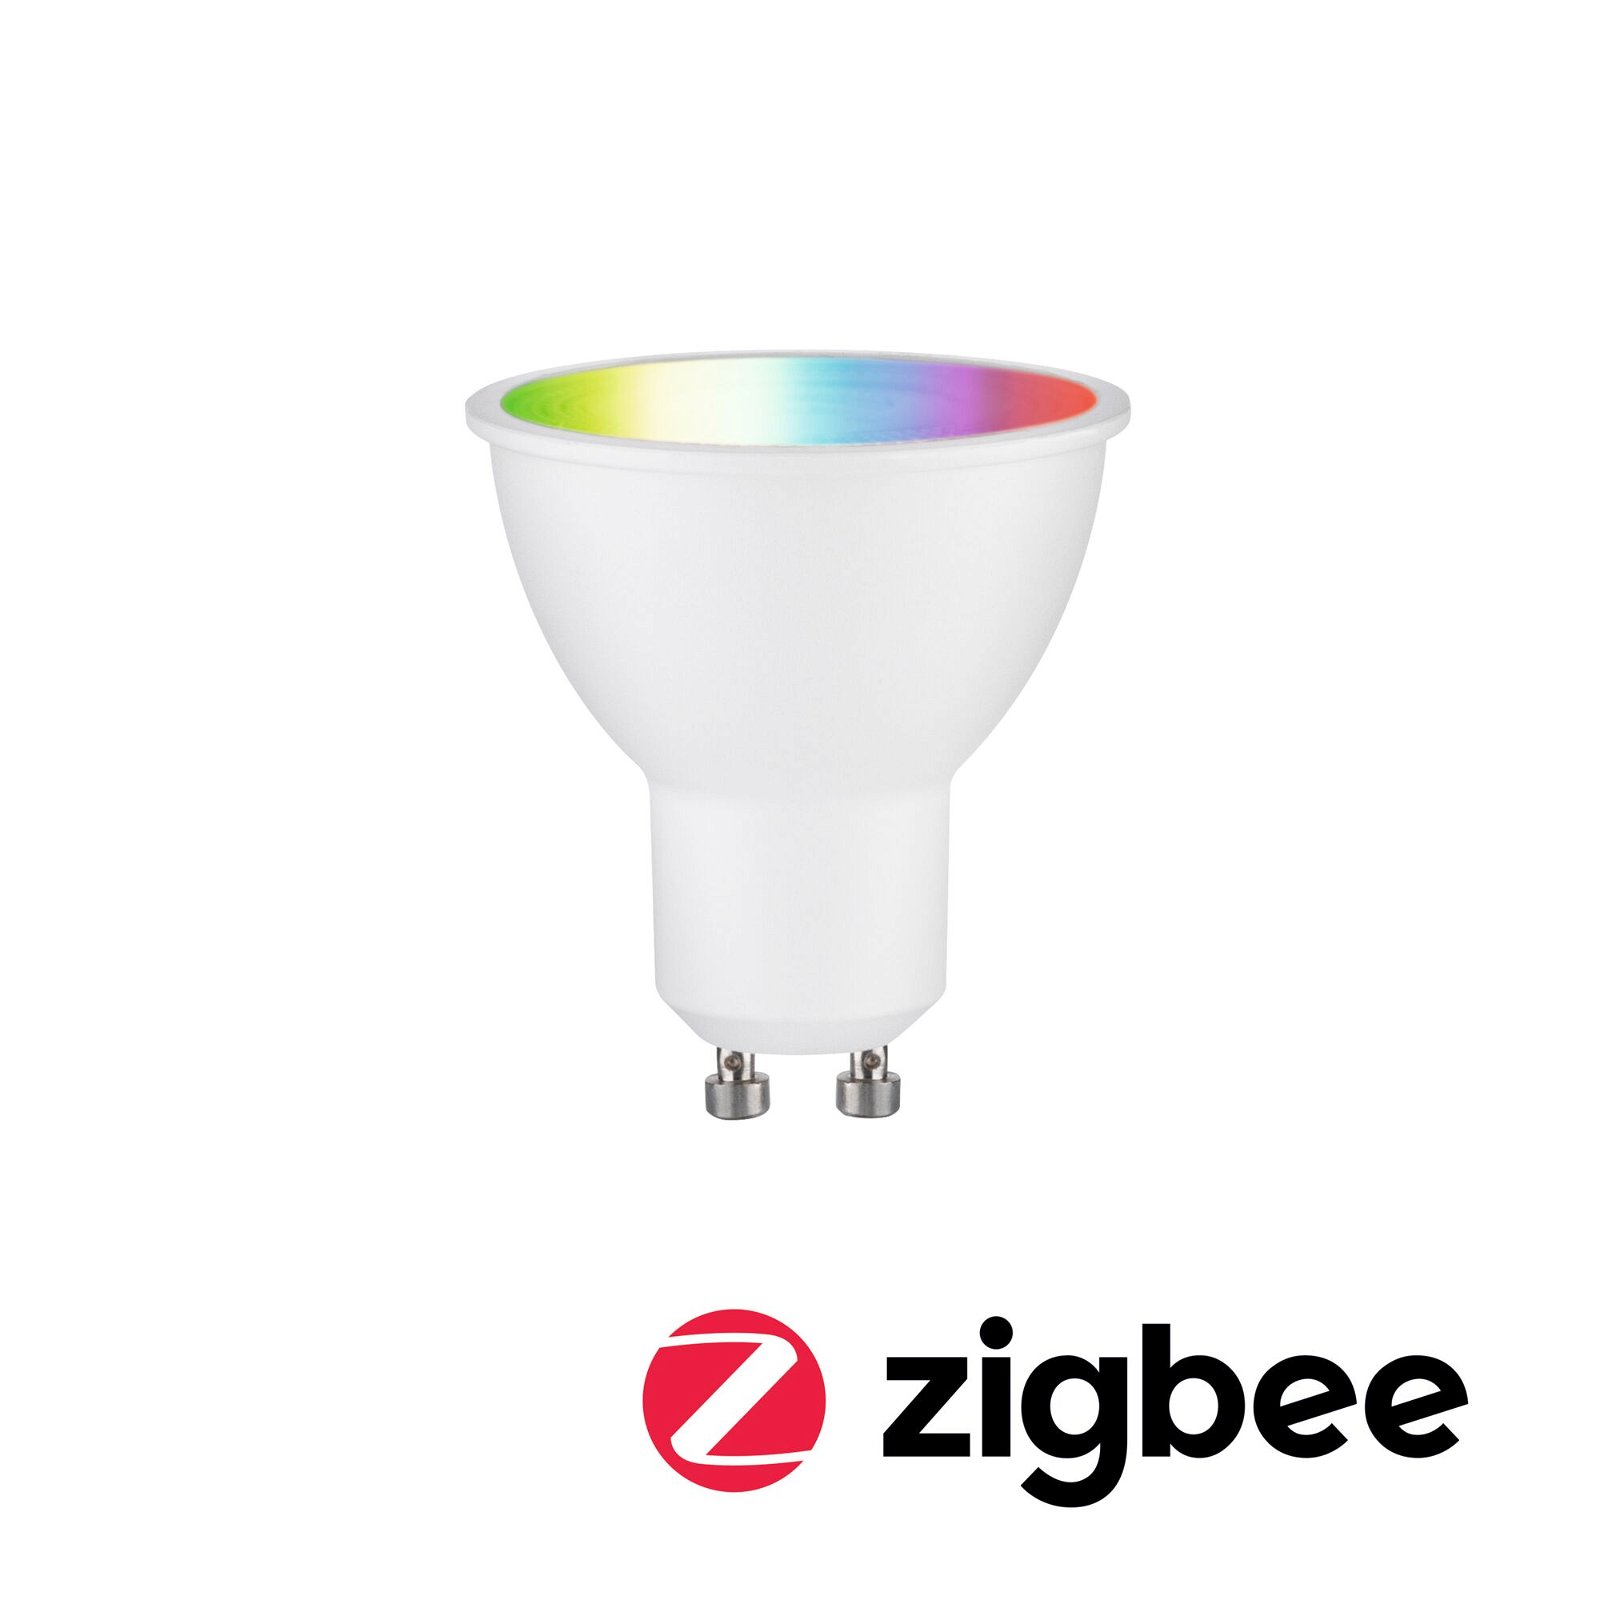 Standard 230V Smart Home Zigbee 3.0 LED Reflektor GU10 350lm 4,8W RGBW+ dimmbar Weiß matt